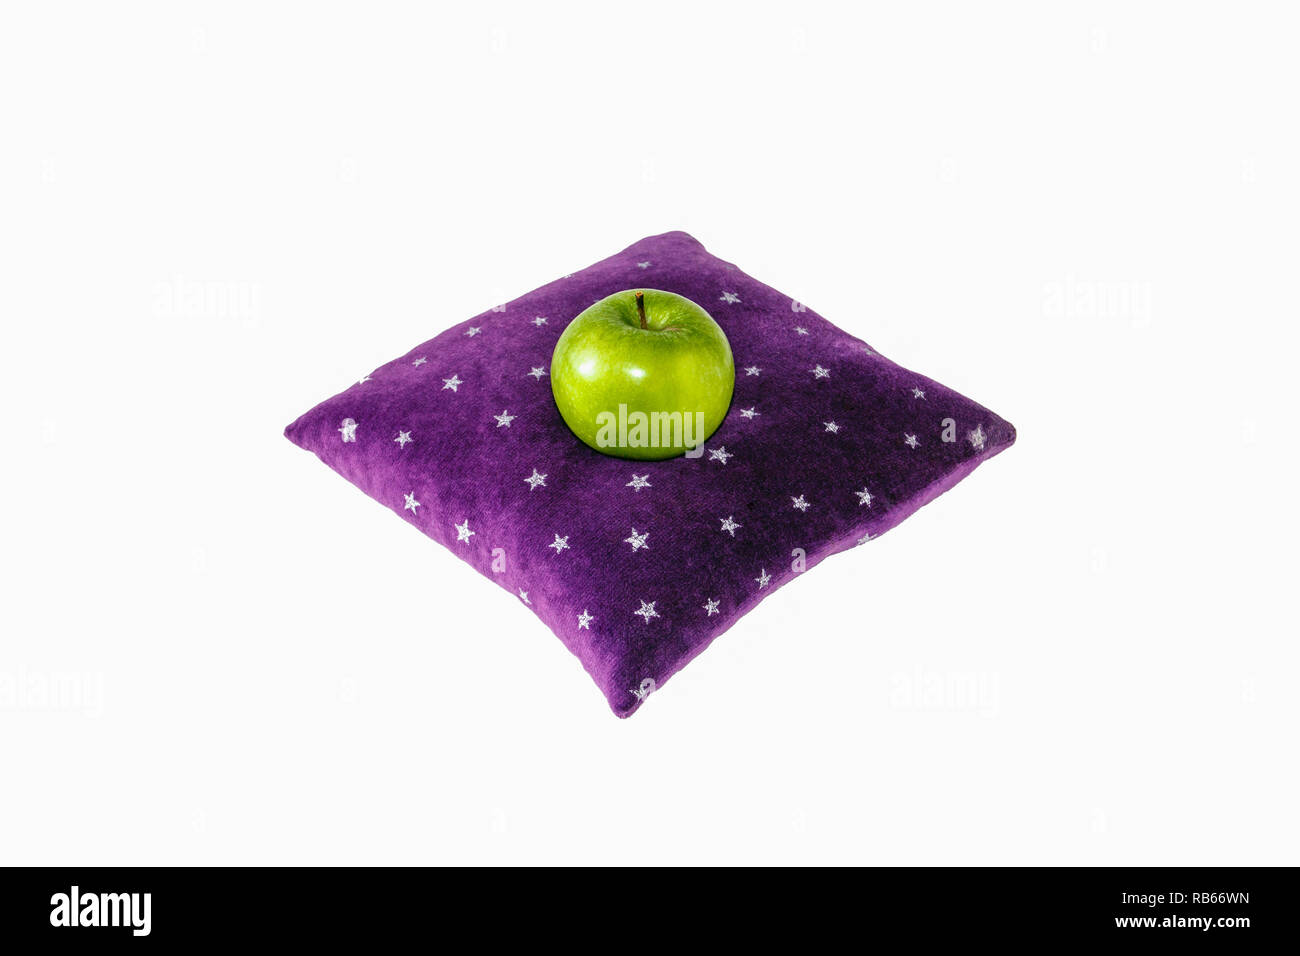 Un seul green Granny Smith apple assis sur un coussin de velours violet à motifs d'étoiles blanches, comme si floating Banque D'Images